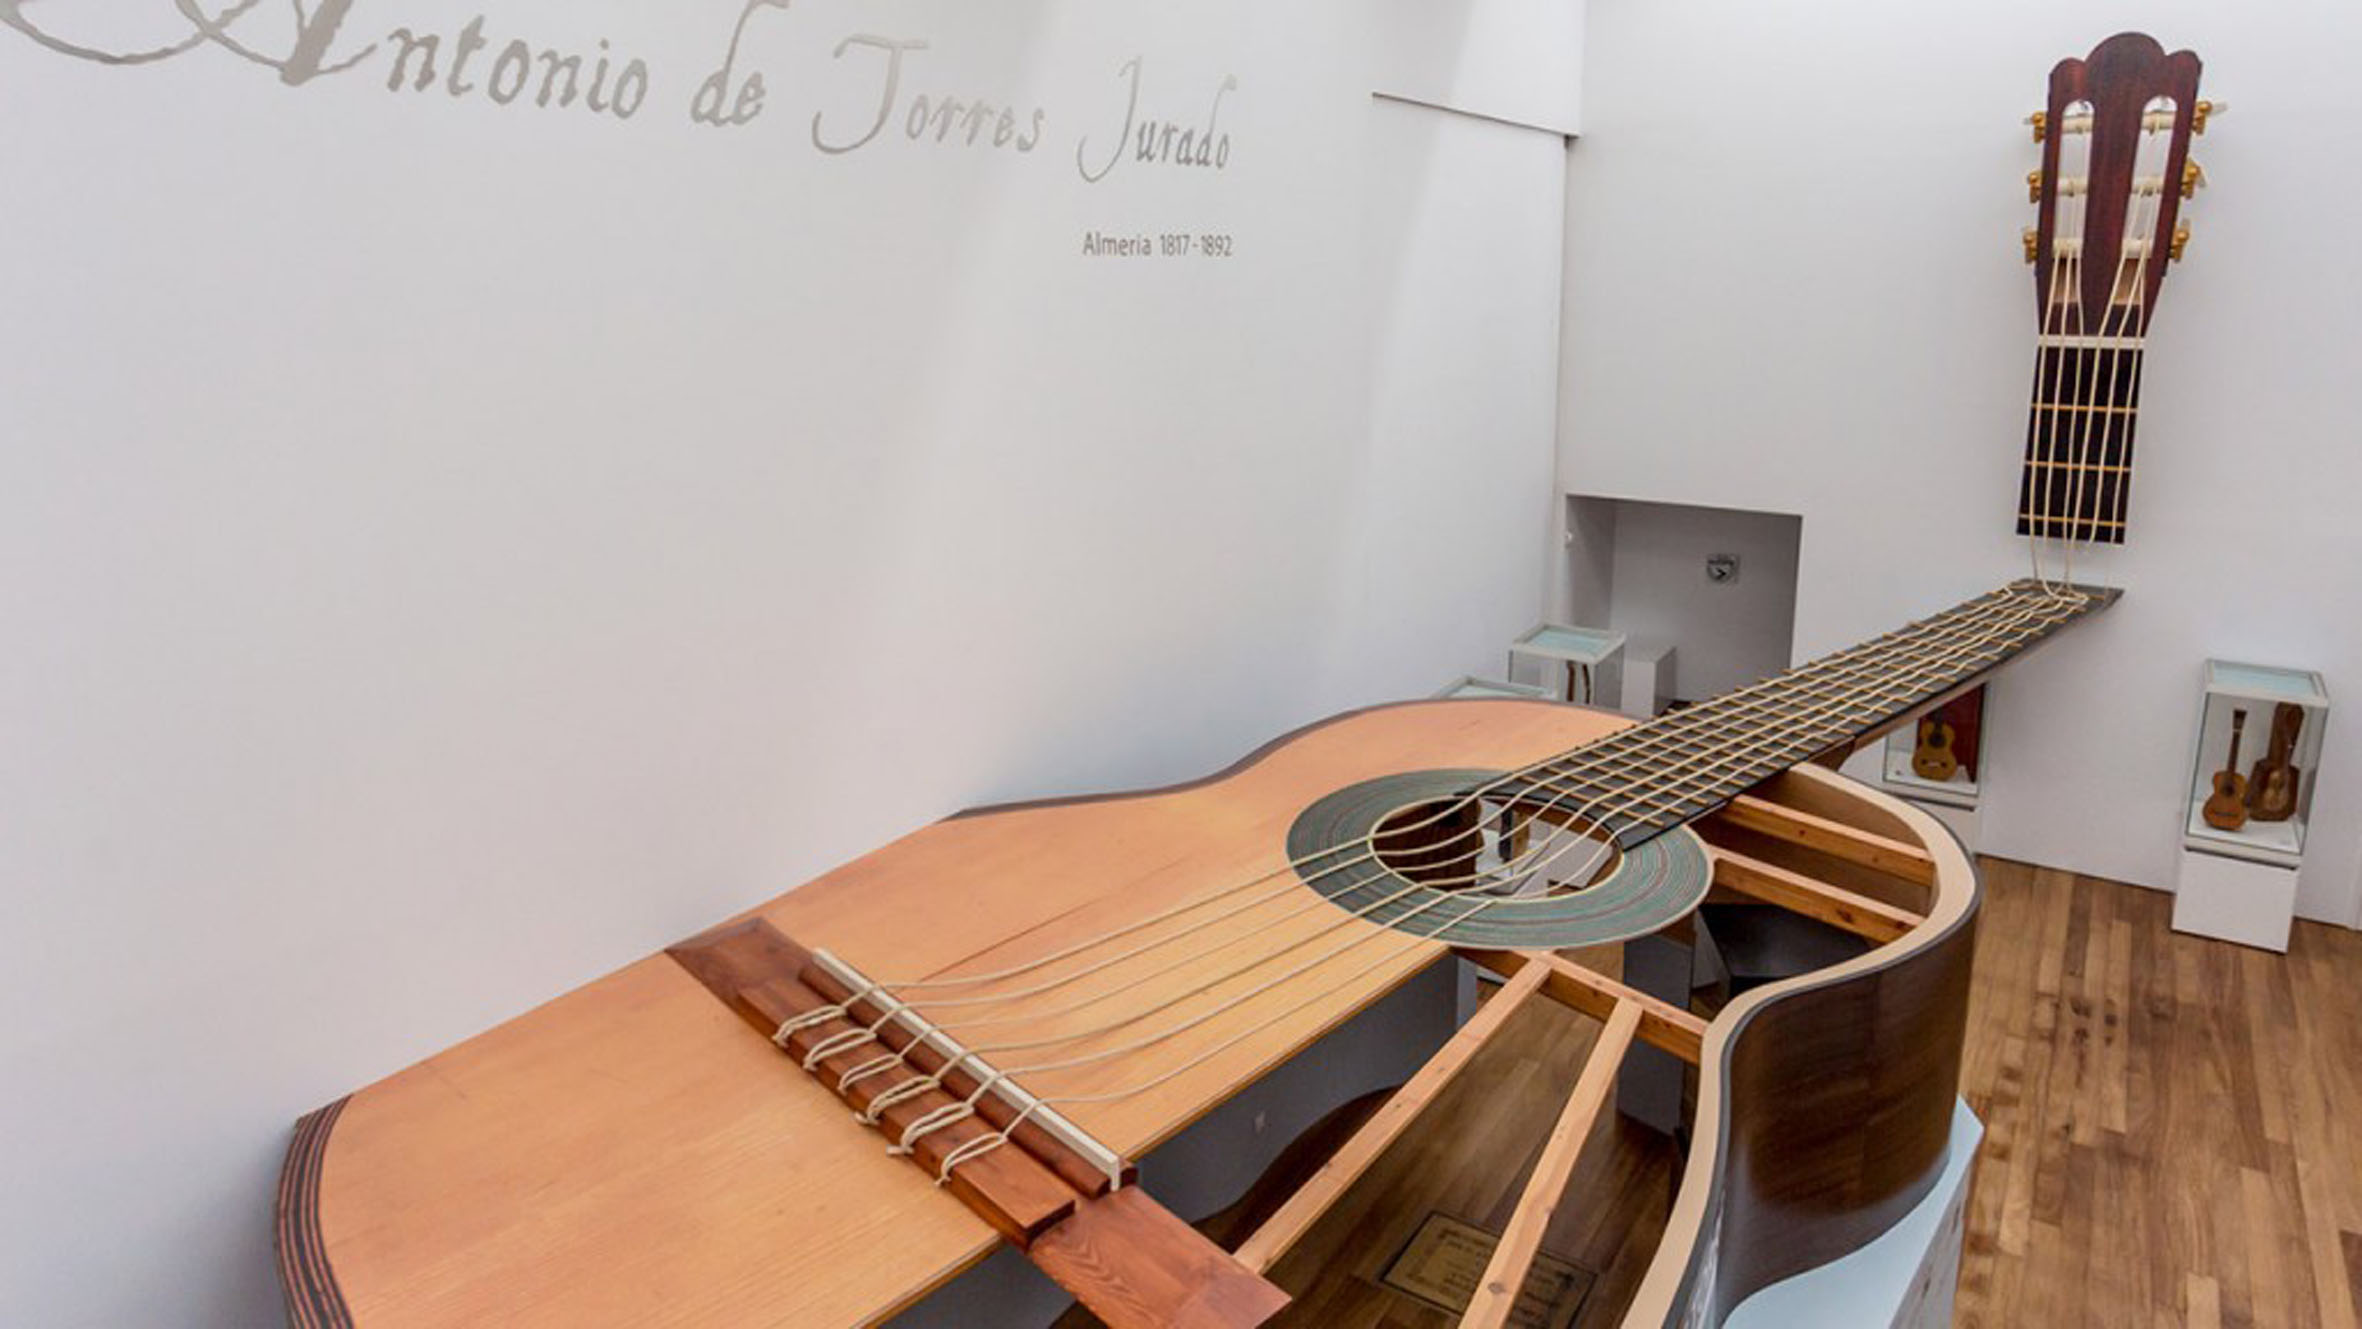 201211 museo de la guitarra - Turismo Almería